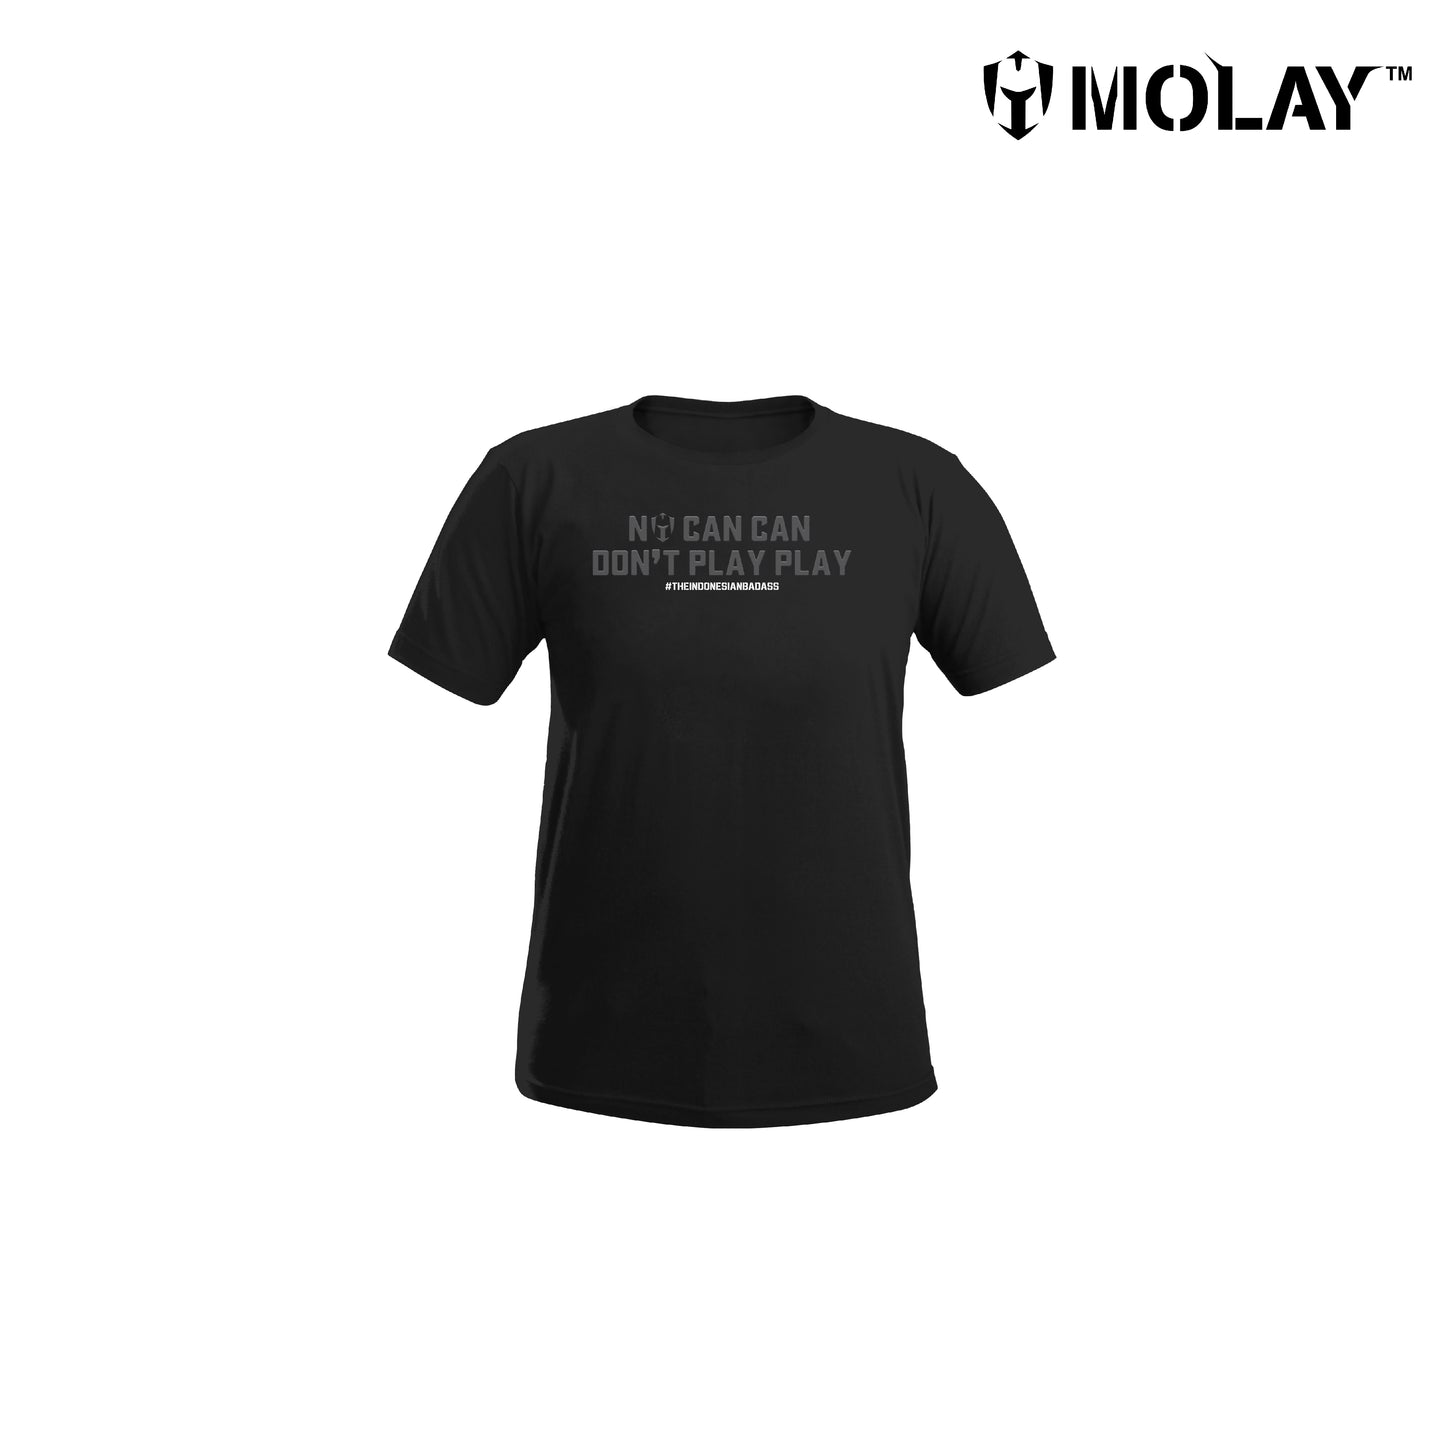 Molay® Bukan Kaleng-Kaleng, Jangan Main-Main T-Shirt